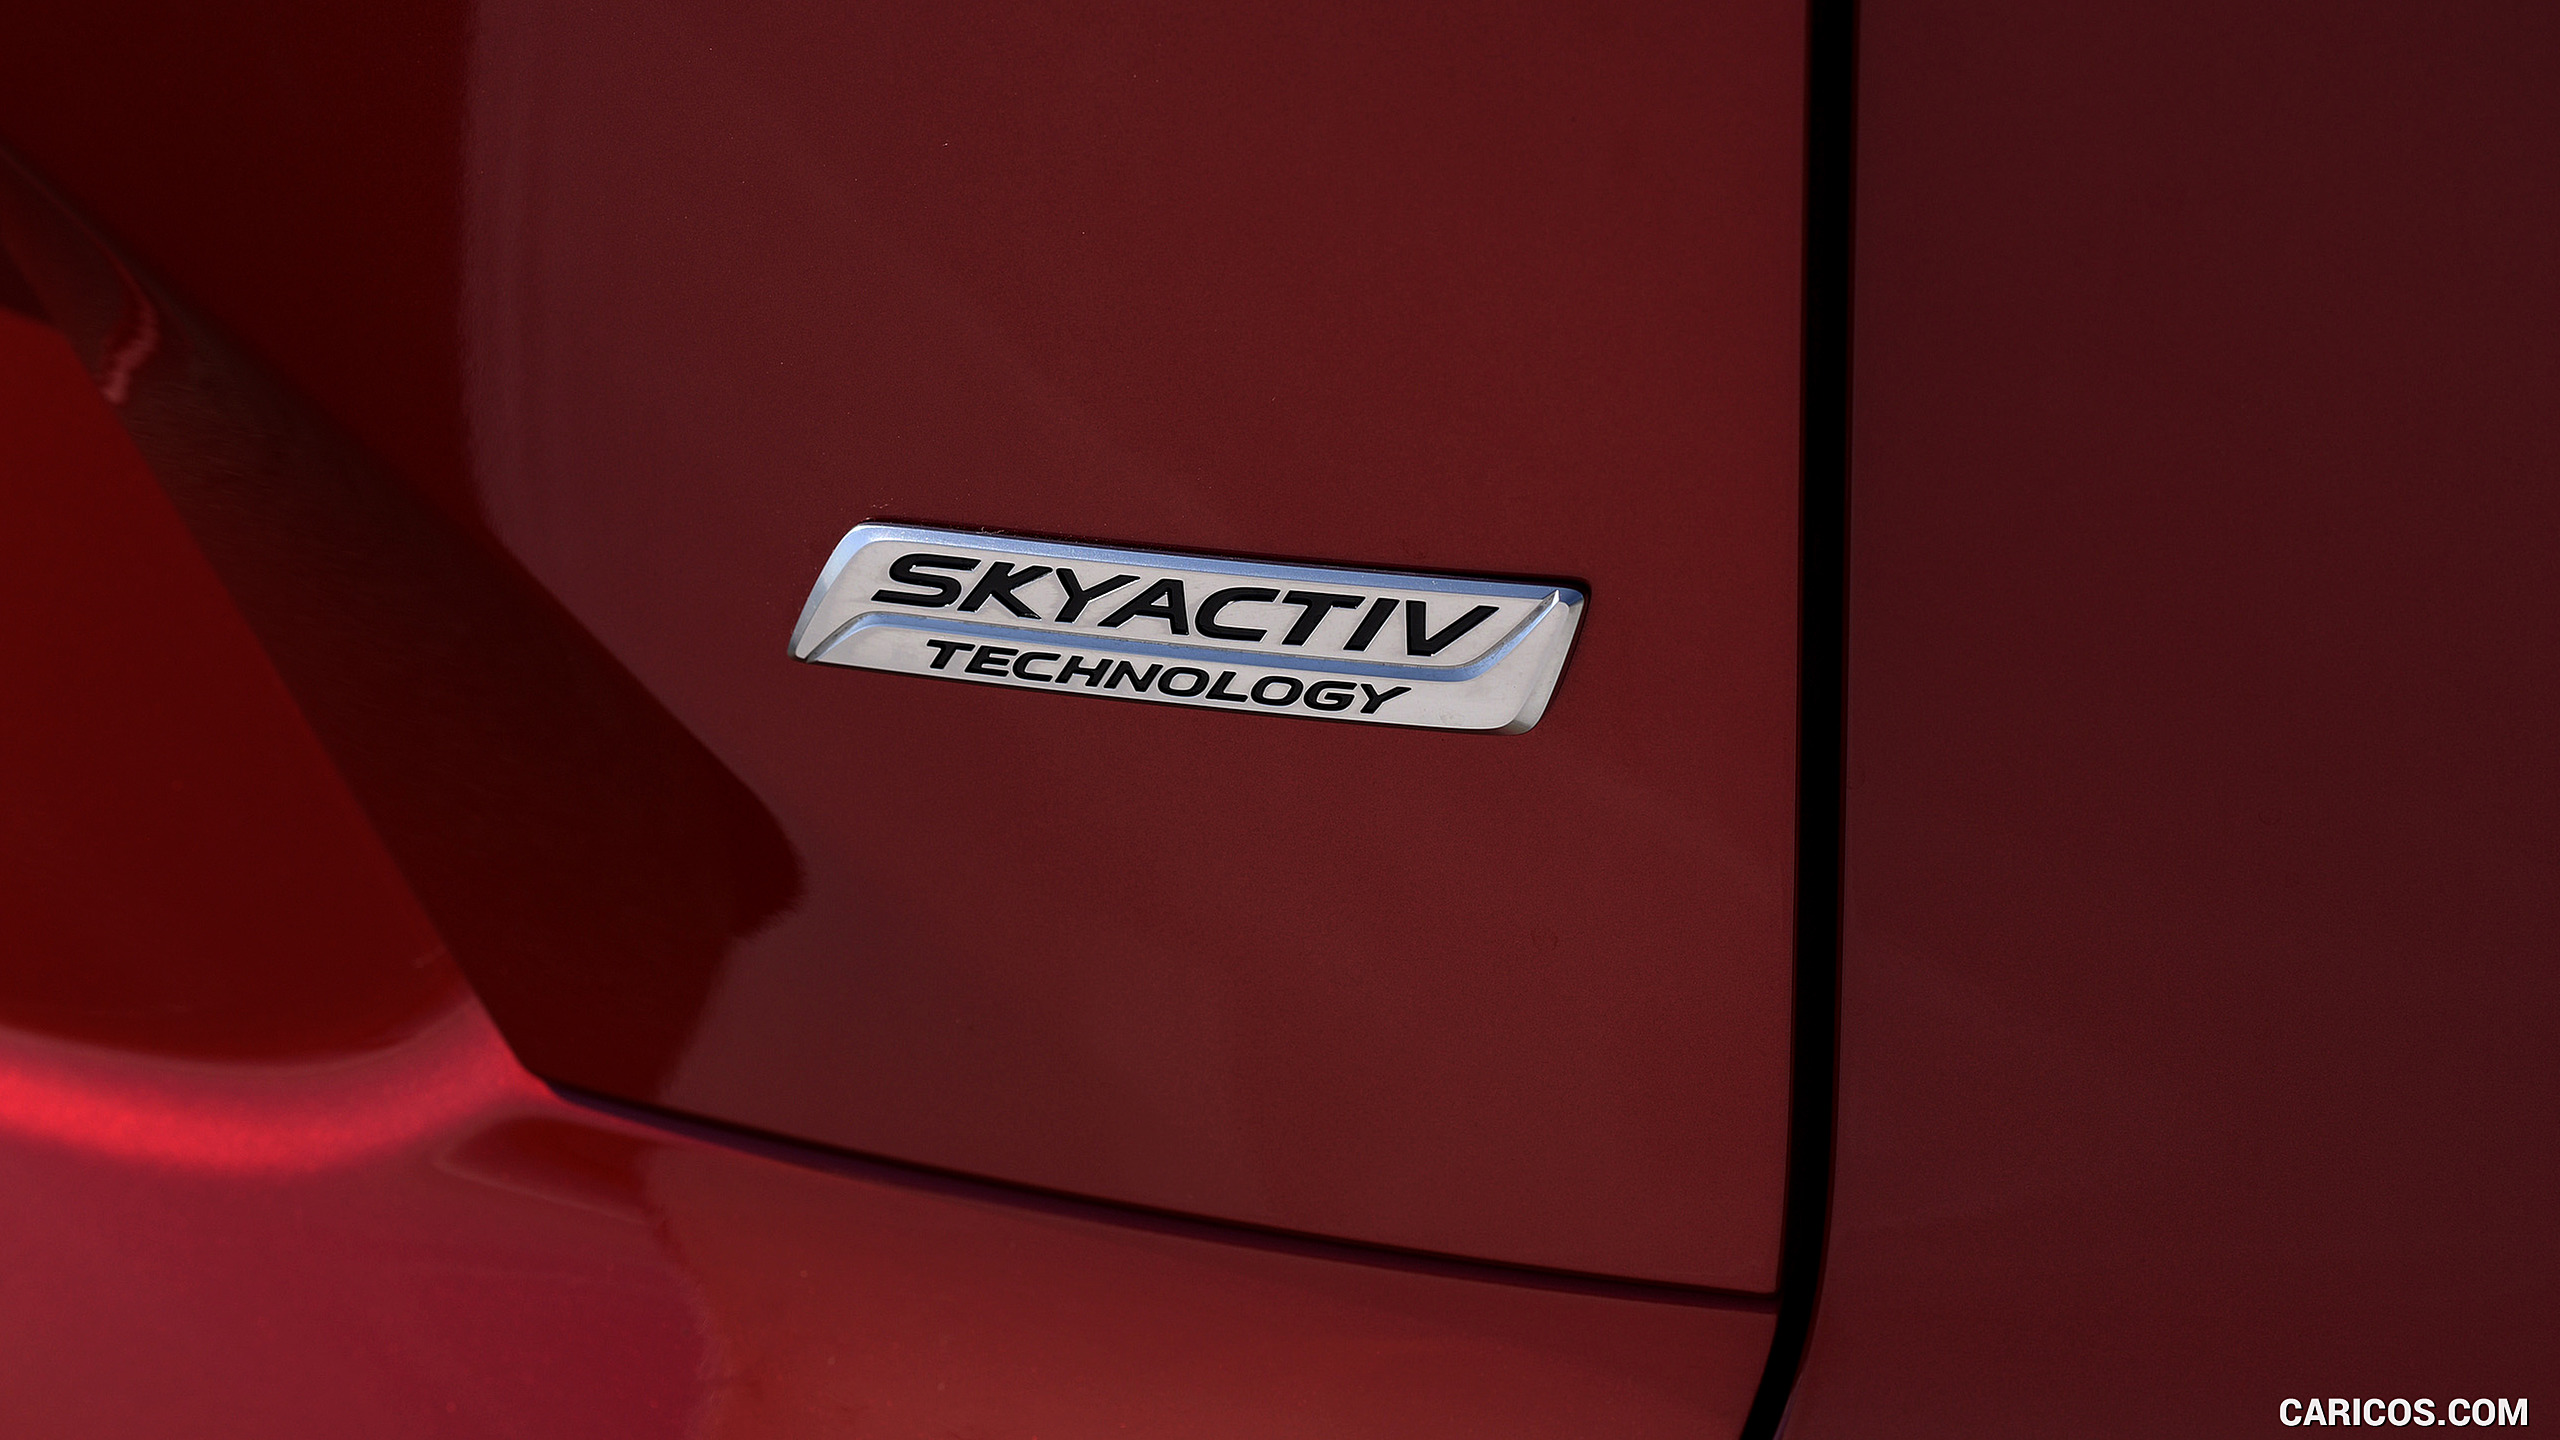 2016 Mazda CX-9 - Badge, #46 of 69